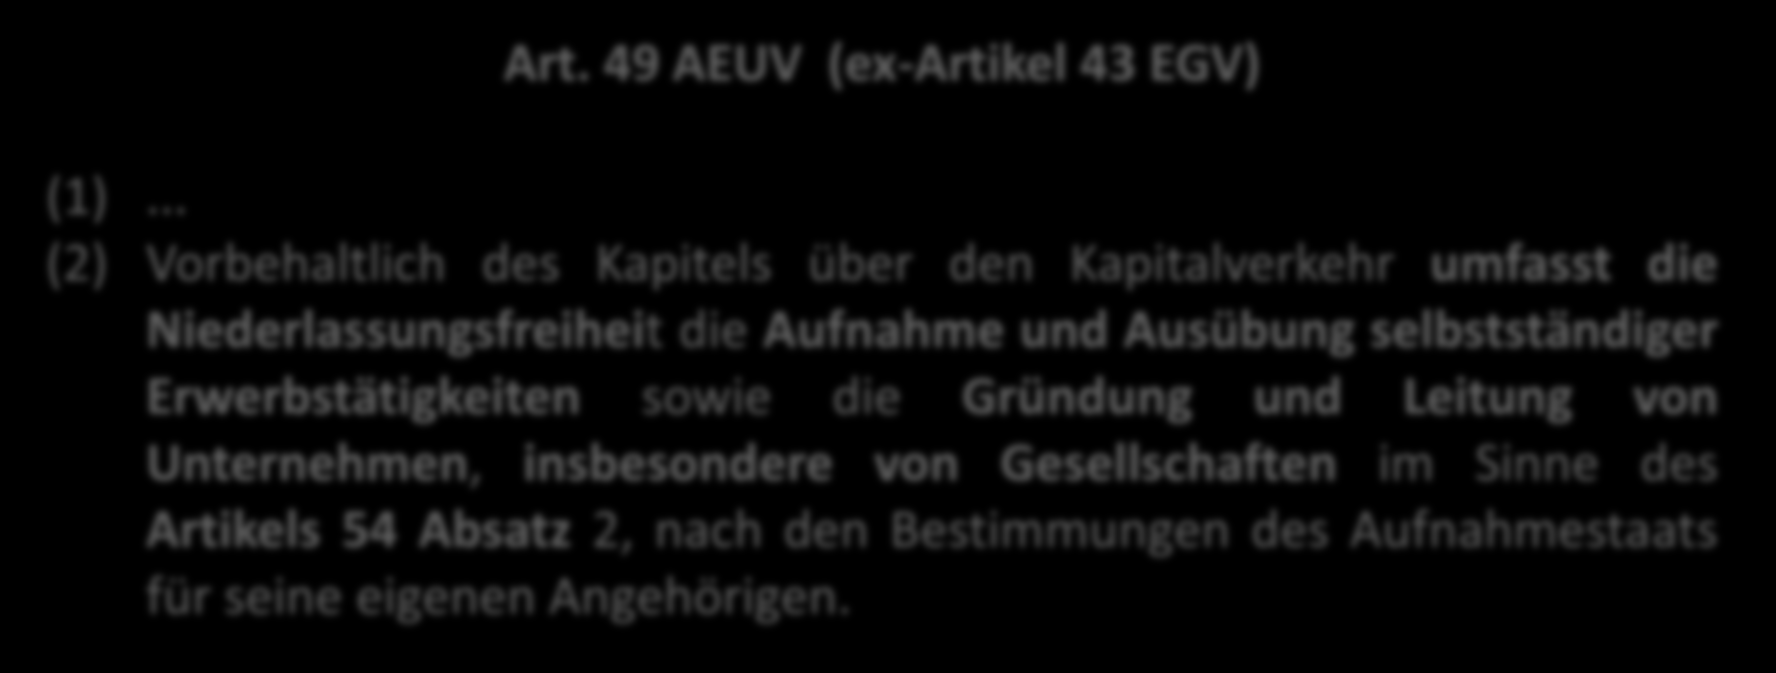 Art. 49 AEUV (ex-artikel 43 EGV) (1).